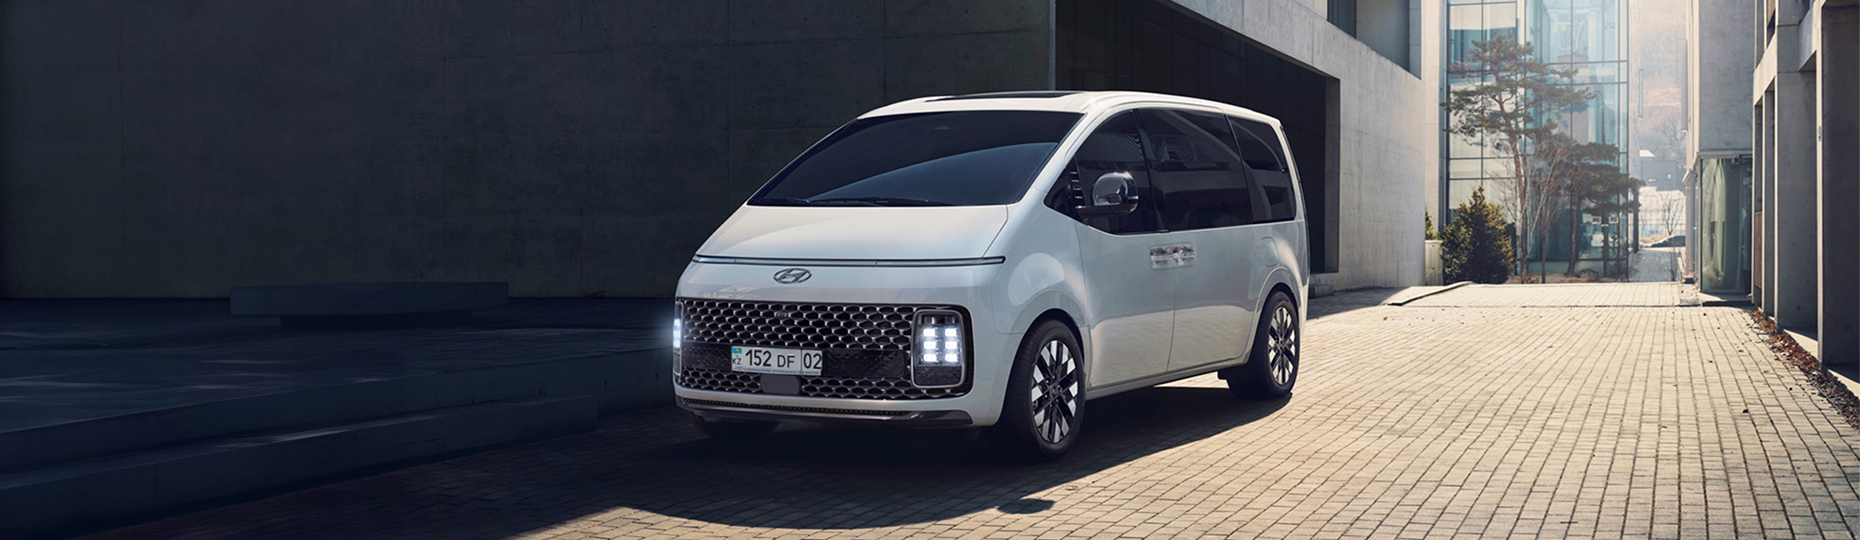 Безопасность нового Hyundai Staria | Официальный дилер в Шымкенте